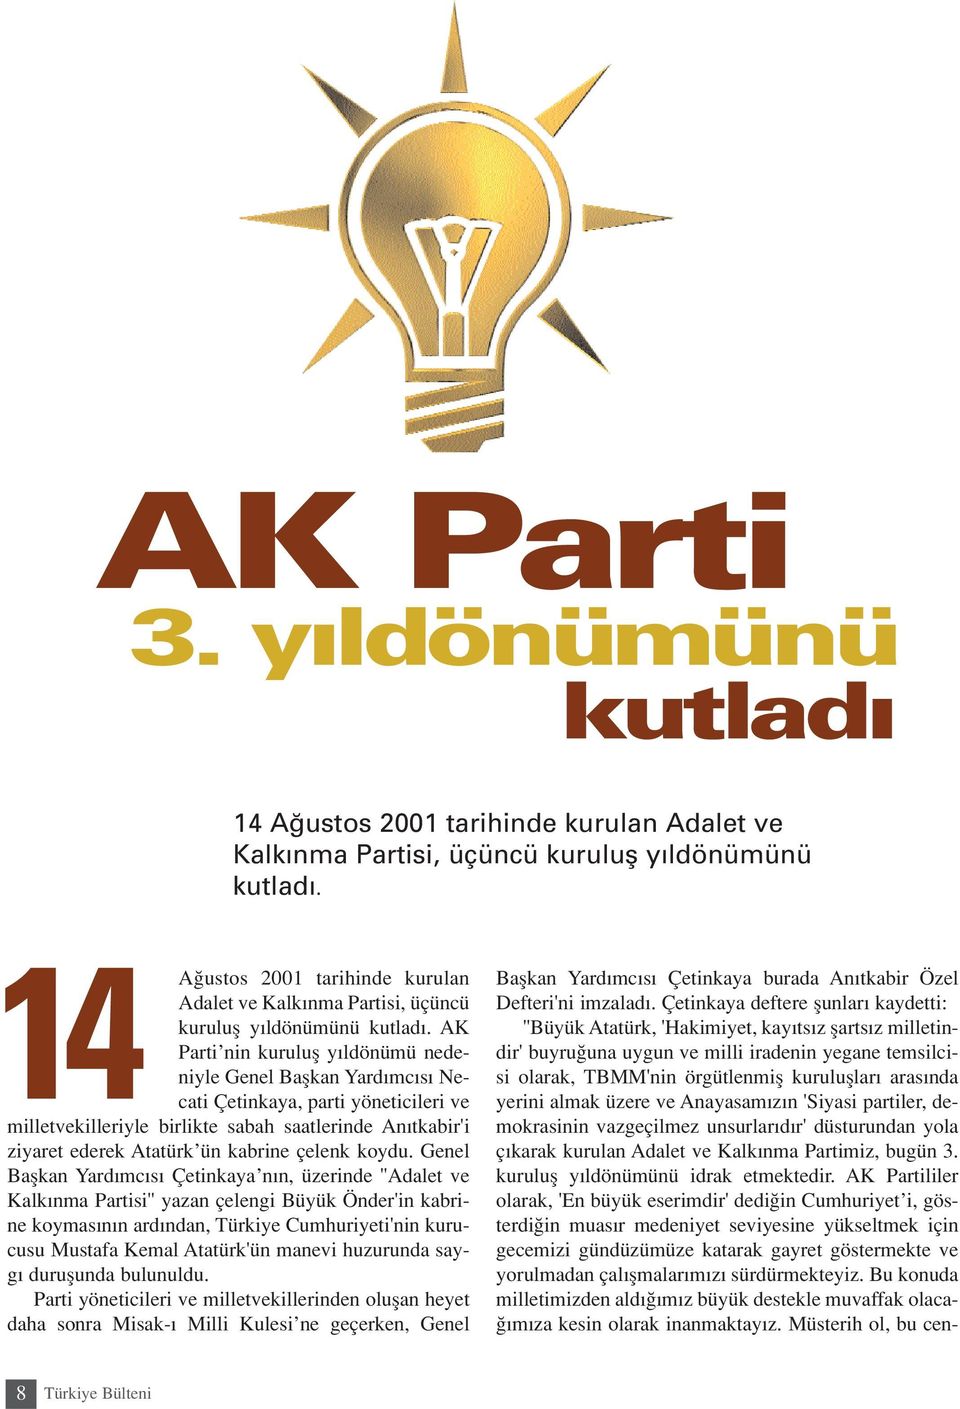 AK Parti nin kurulufl y ldönümü nedeniyle Genel Baflkan Yard mc s Necati Çetinkaya, parti yöneticileri ve milletvekilleriyle birlikte sabah saatlerinde An tkabir'i ziyaret ederek Atatürk ün kabrine